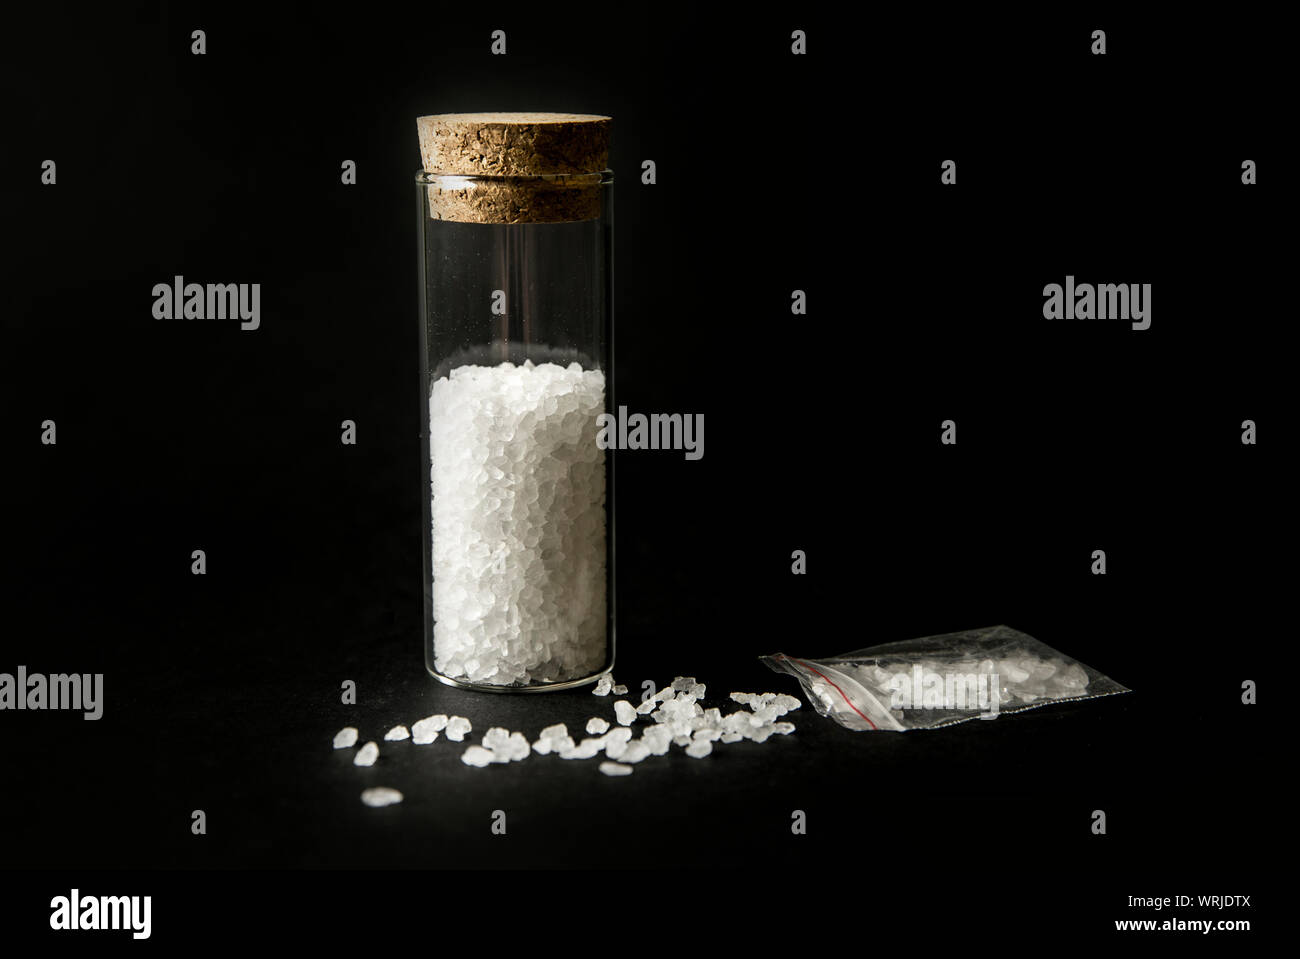 Konzeptionelle Bild von Drogen Drogen Konzept Badesalz". White Crystal Pulver auf schwarzem Hintergrund (eingerichtet), ähneln zum Badezimmer Badewanne Salz. Stockfoto